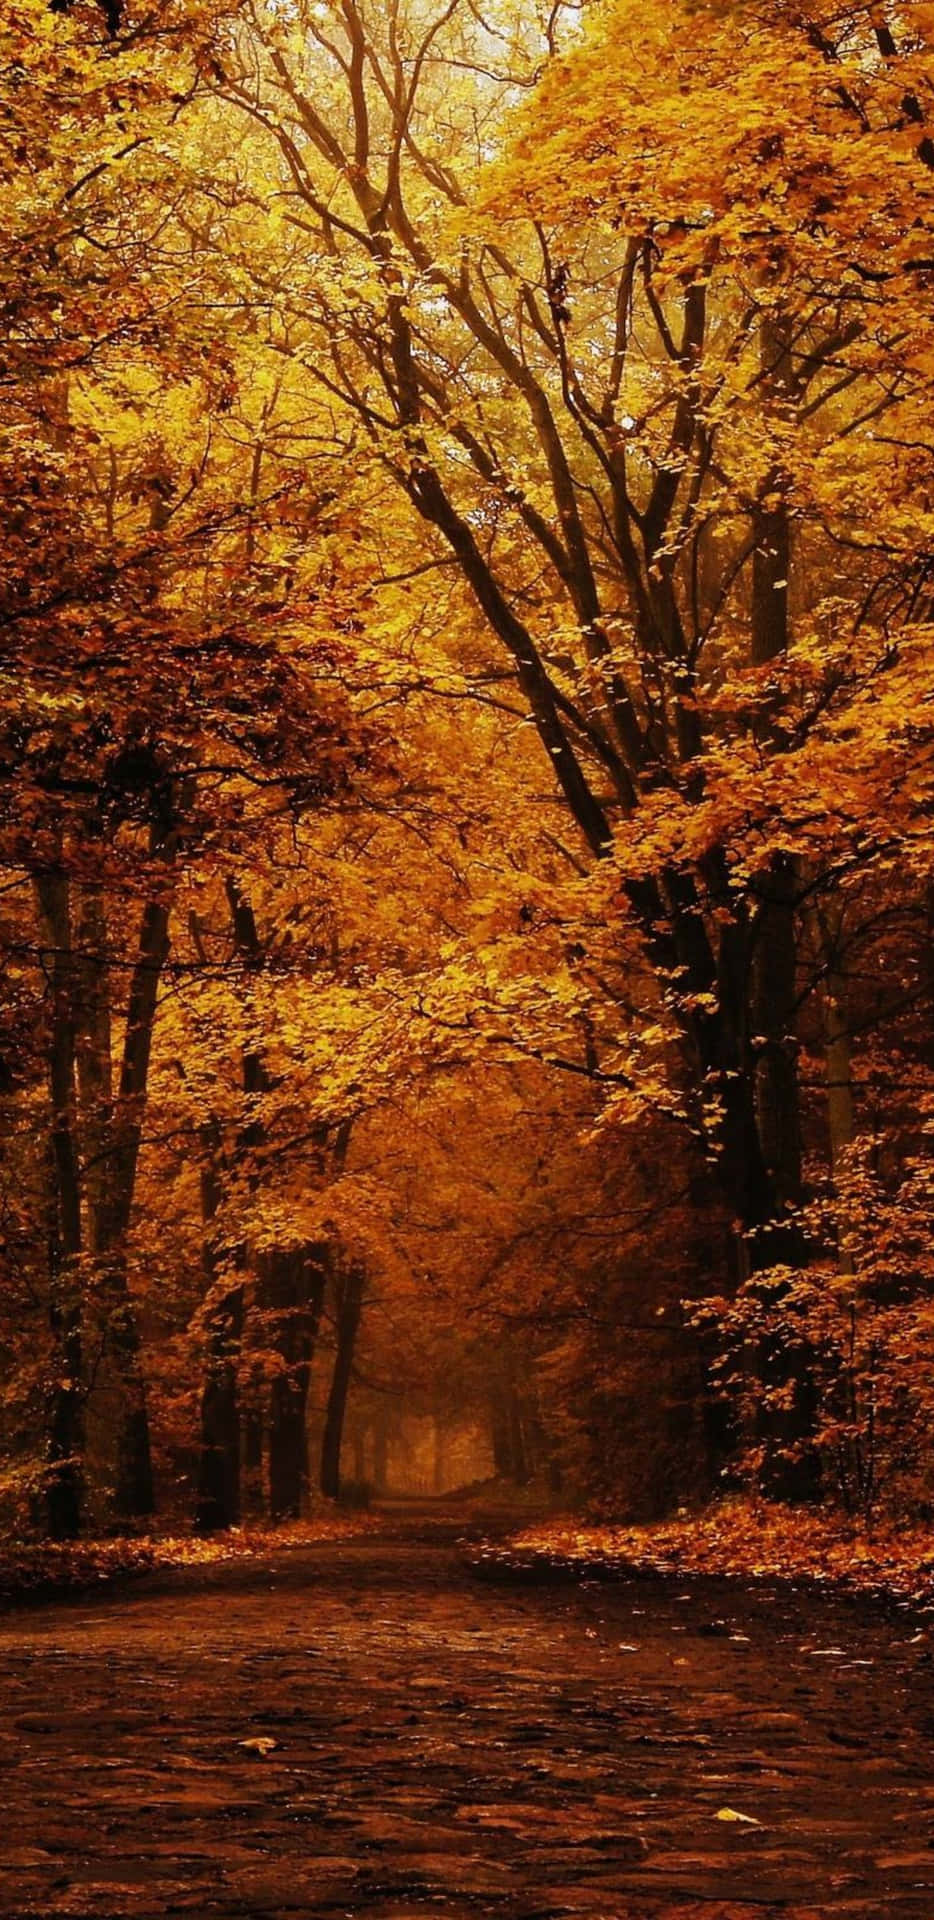 Pixel3xl Fundo De Tela Do Outono Na Floresta Escura.